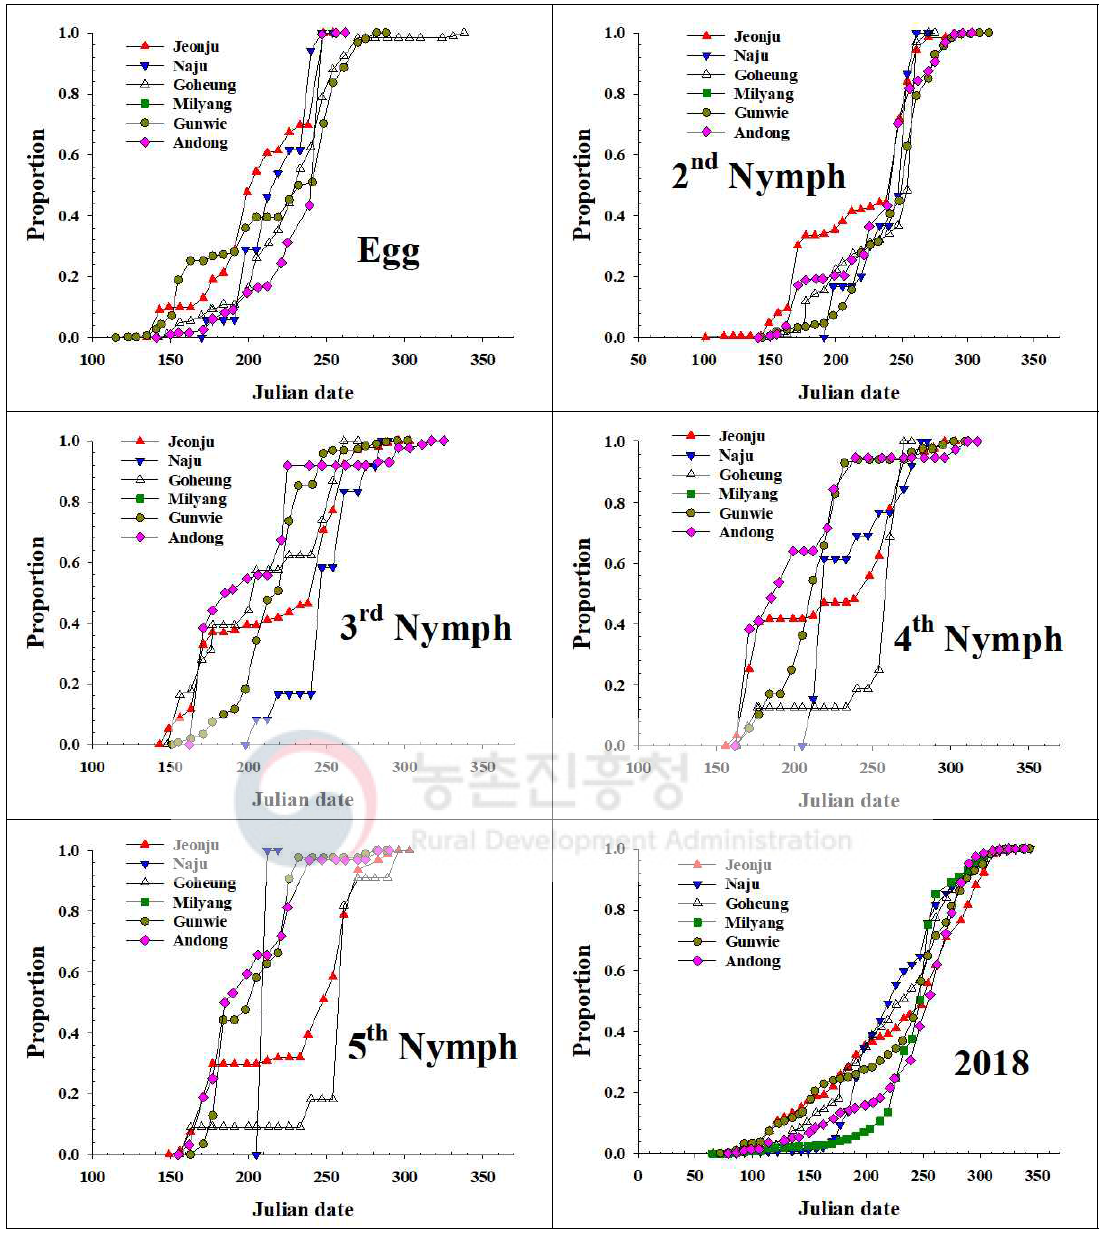 내륙지역 톱다리개미허리노린재 발육단계별 개체수 누적증가 지역간 비교(2018)